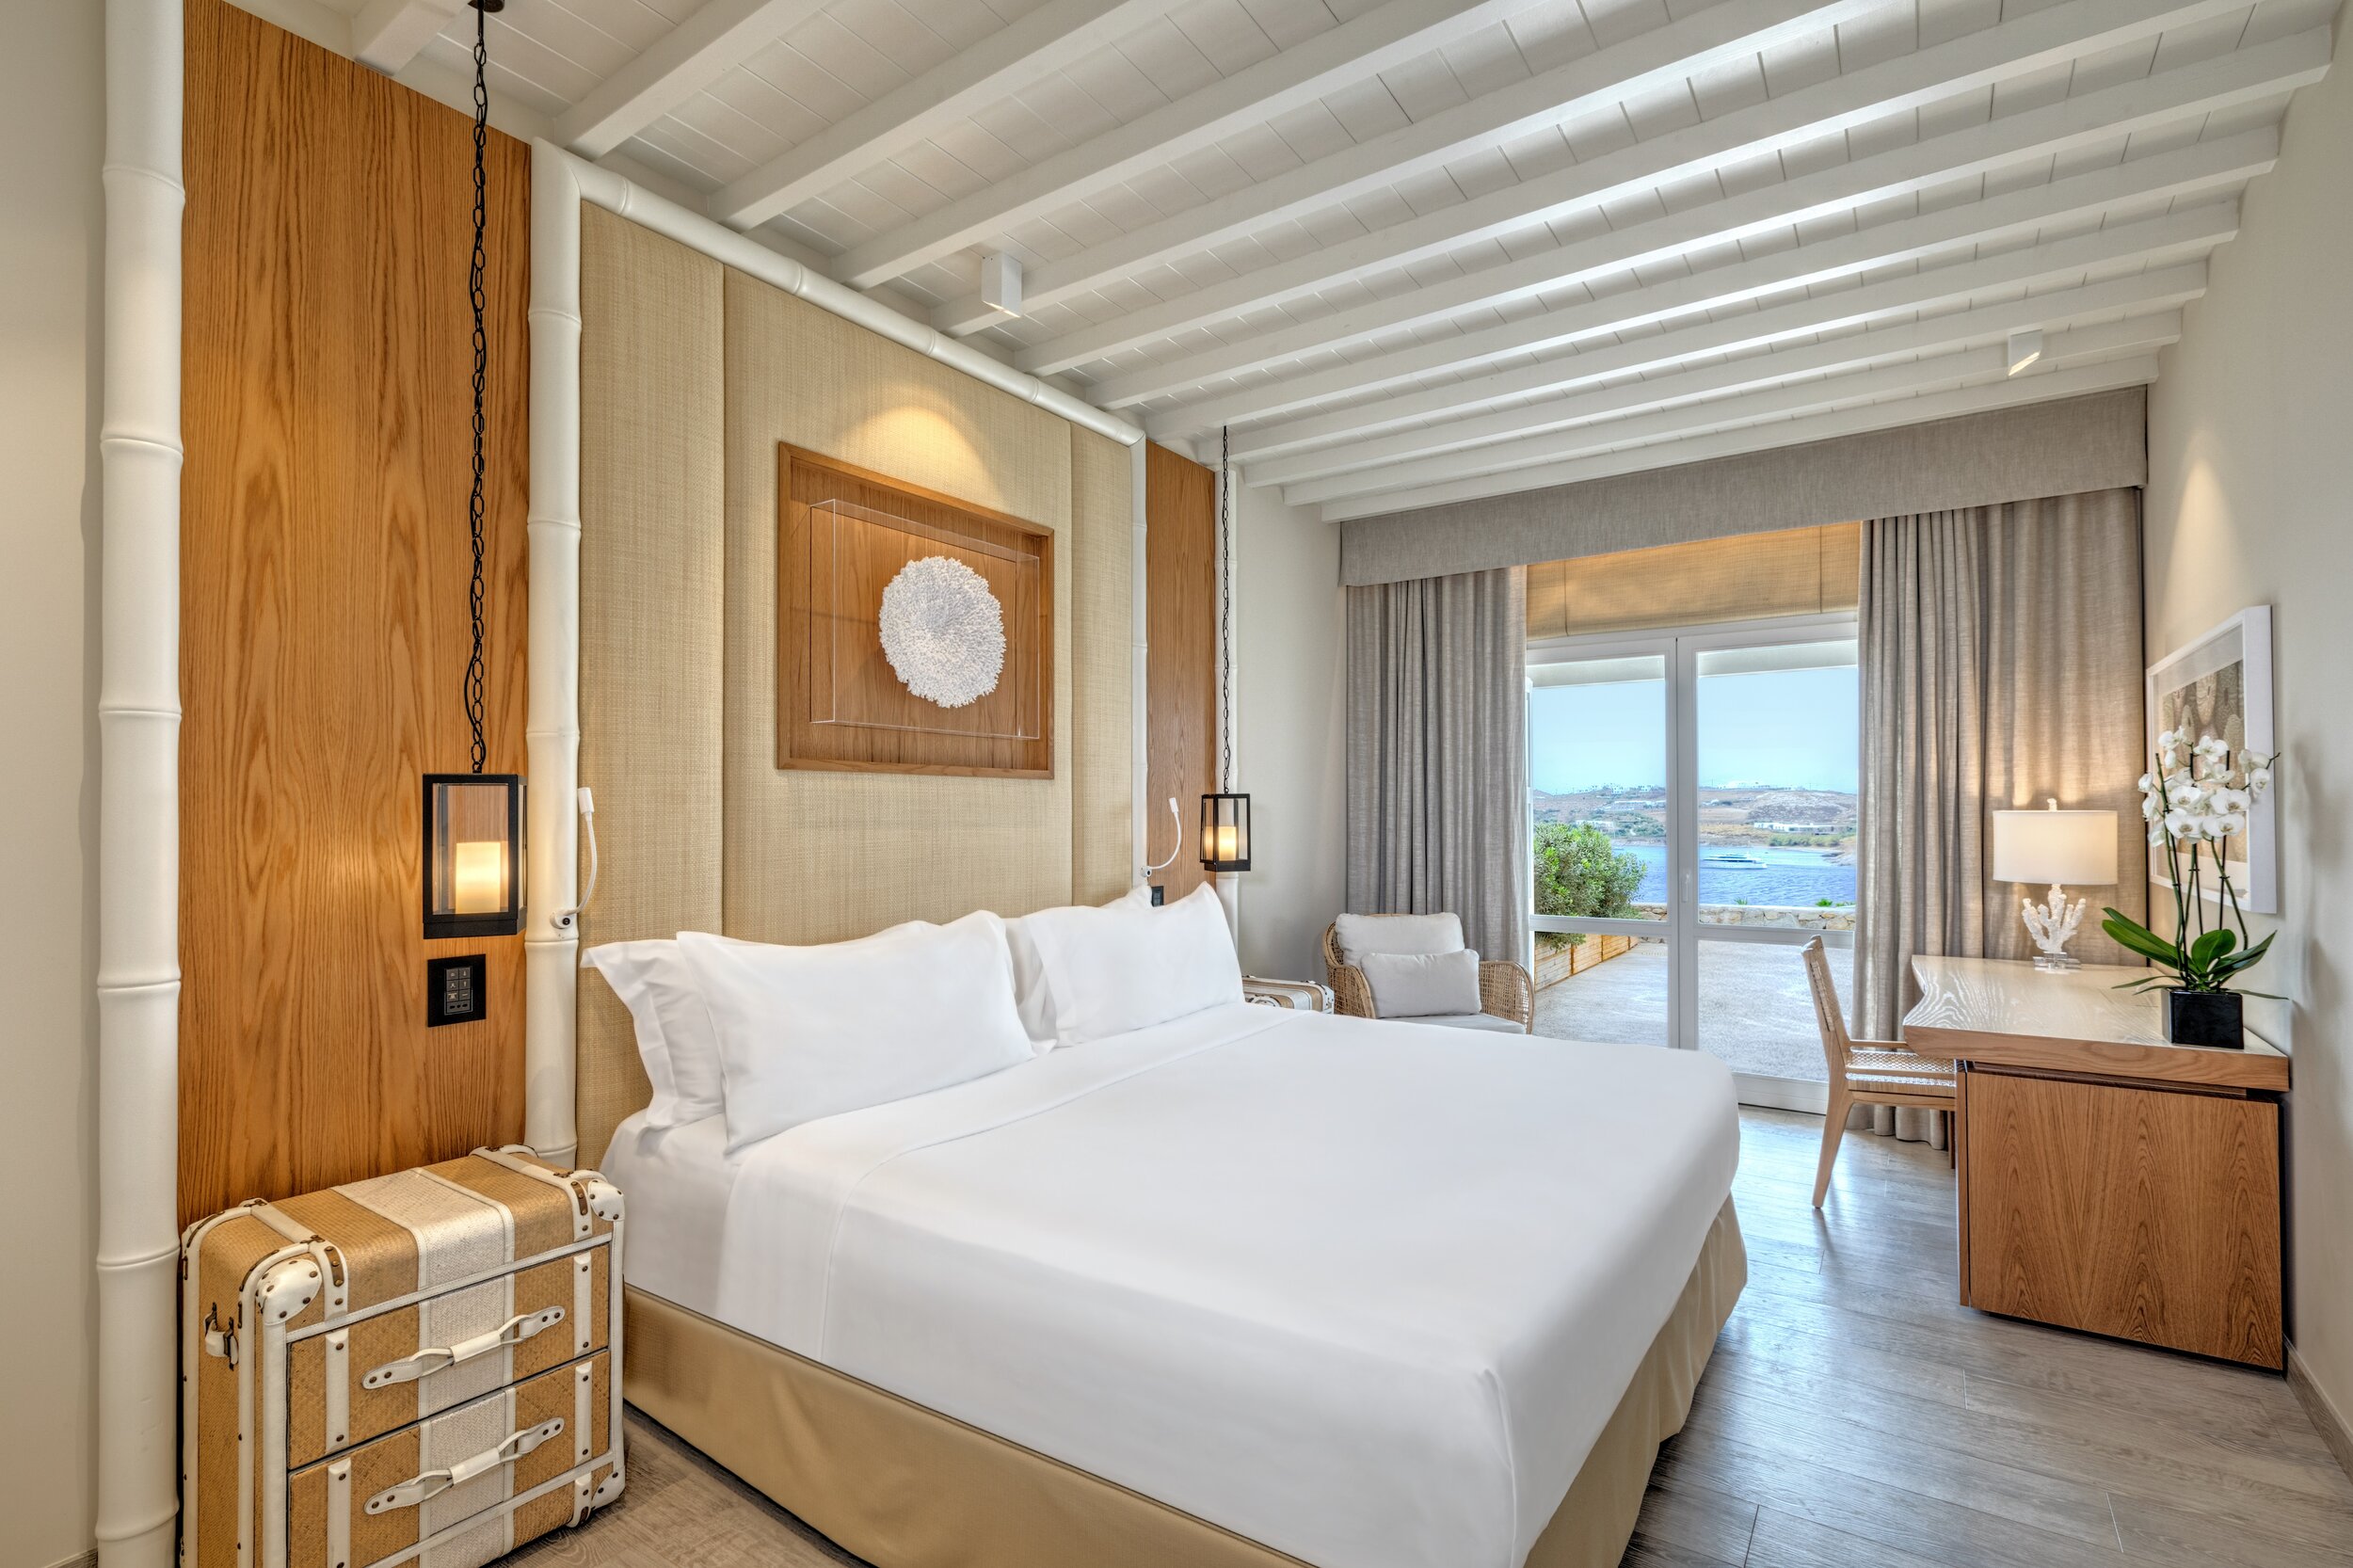 H-Mykonos-Santa Marina-Deluxe Sea View Room.jpg